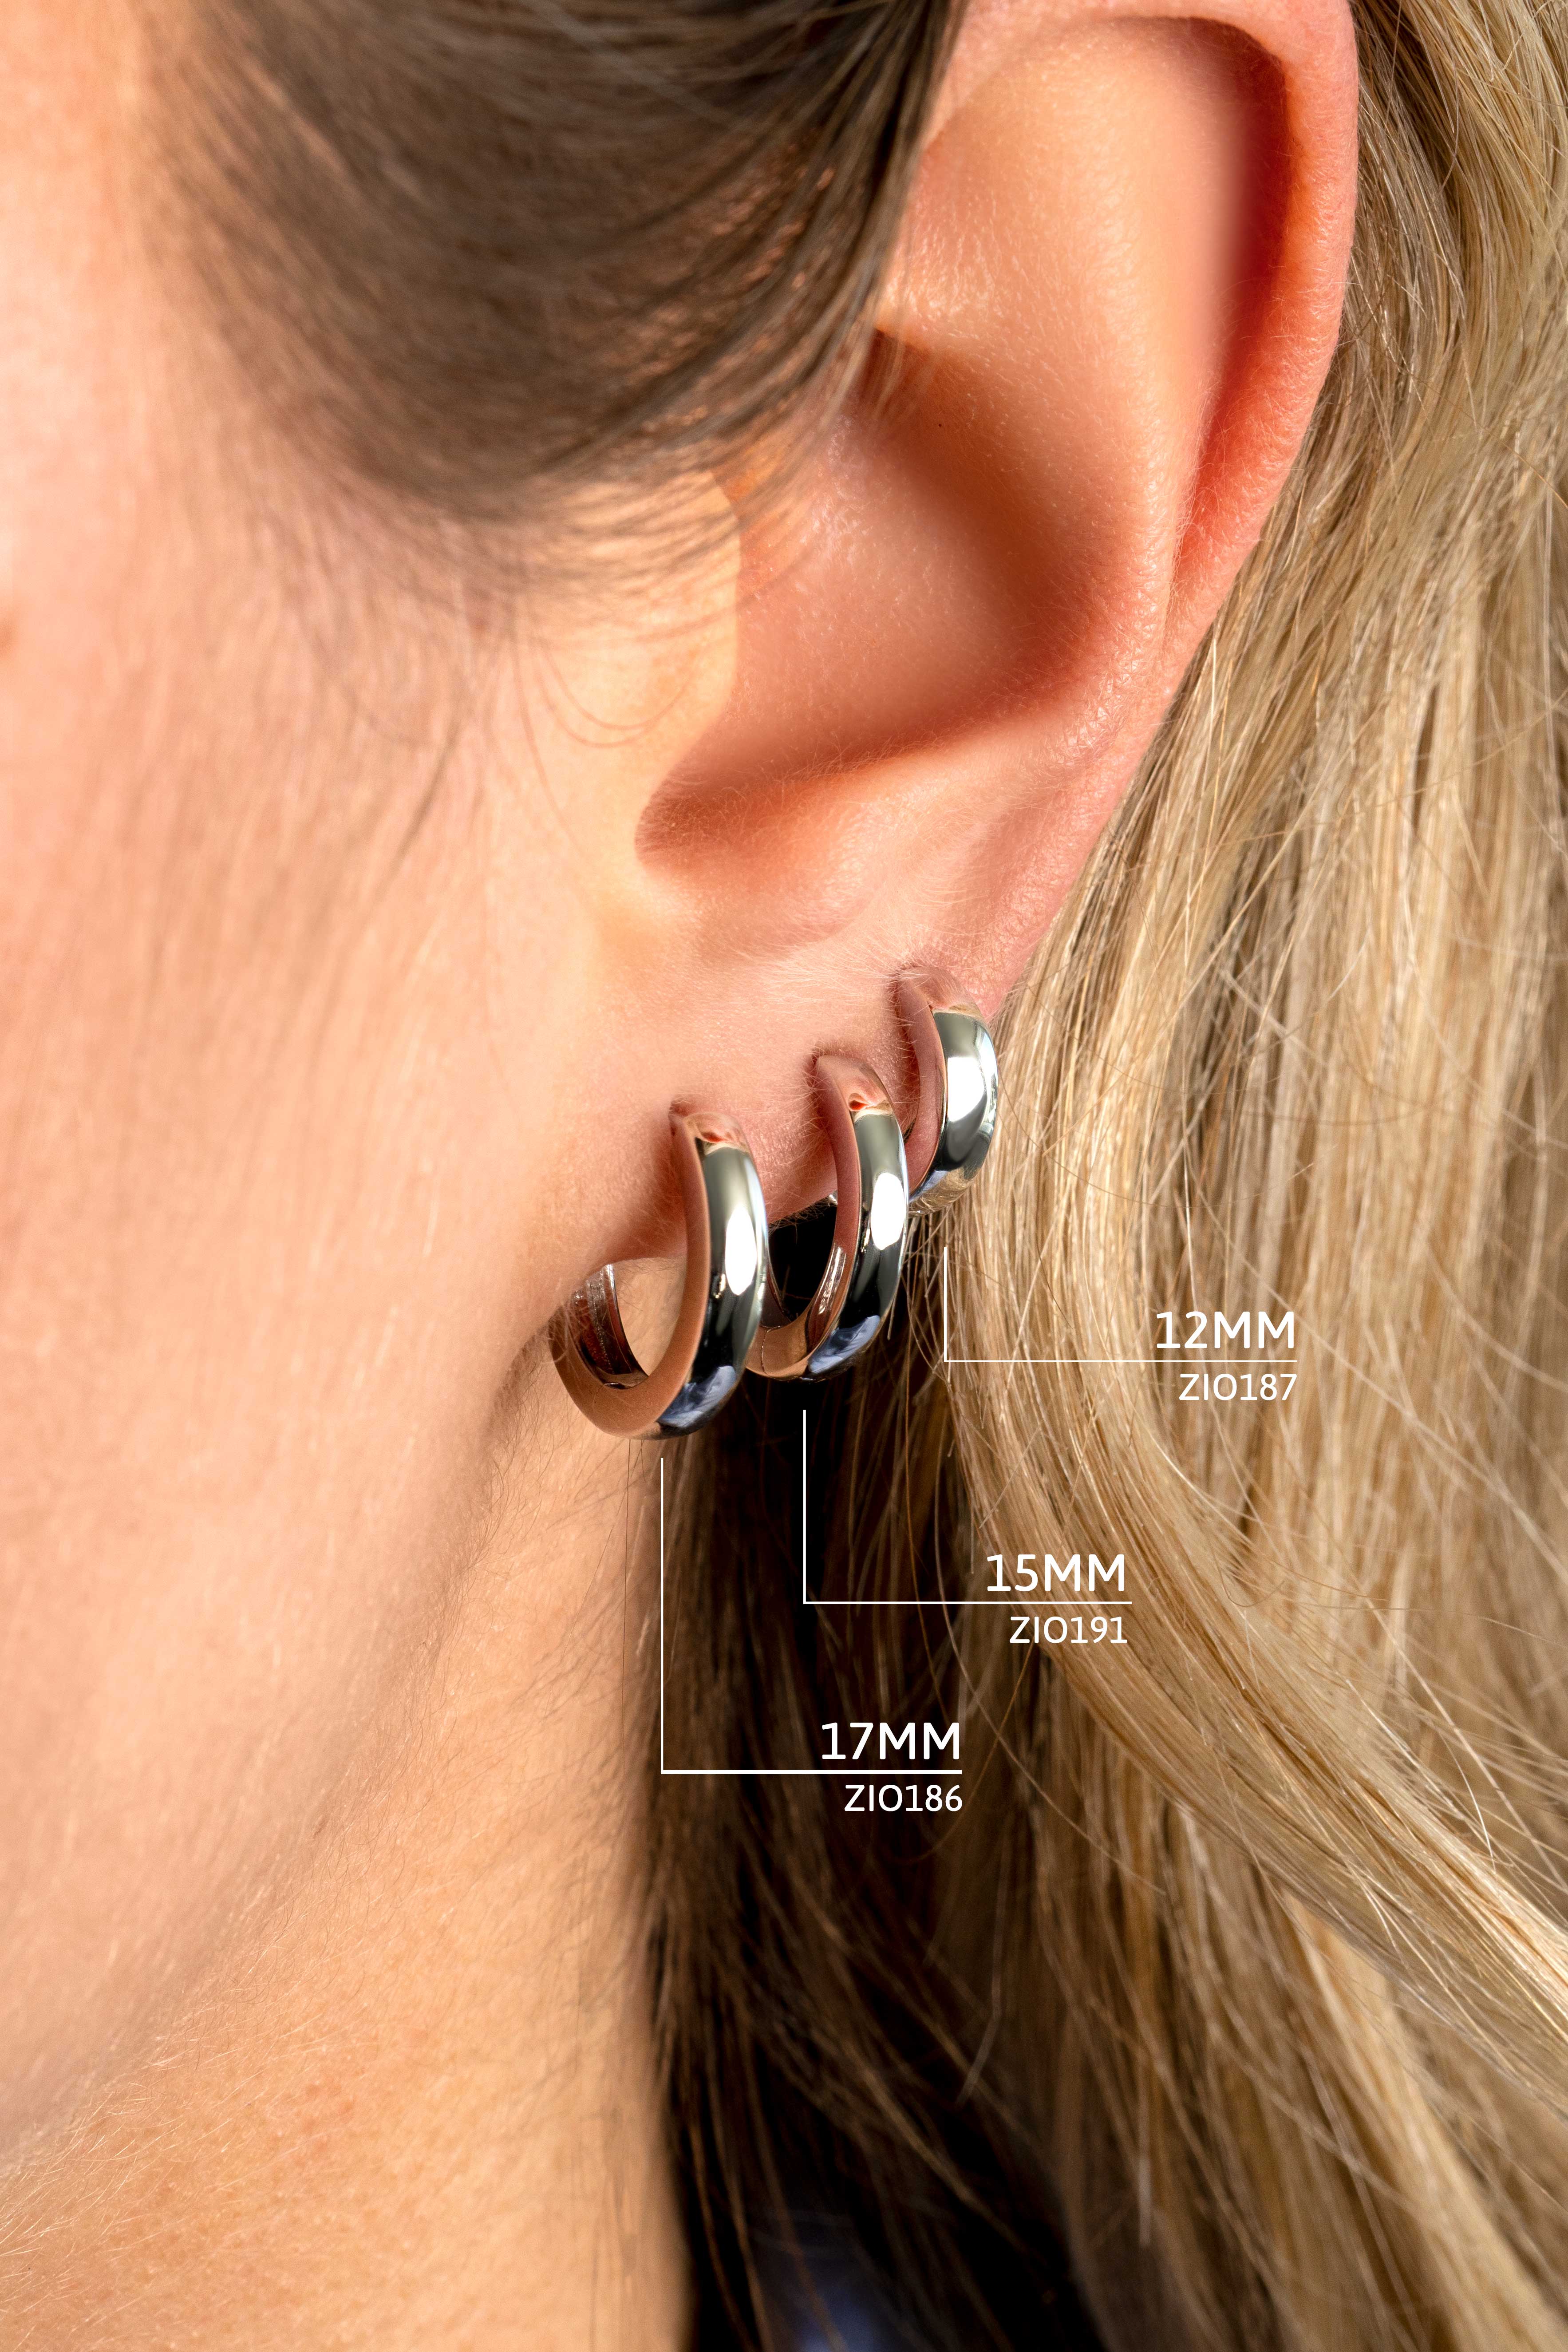 15mm ZINZI Sterling Silver Hoop Earrings width 3mm ZIO191